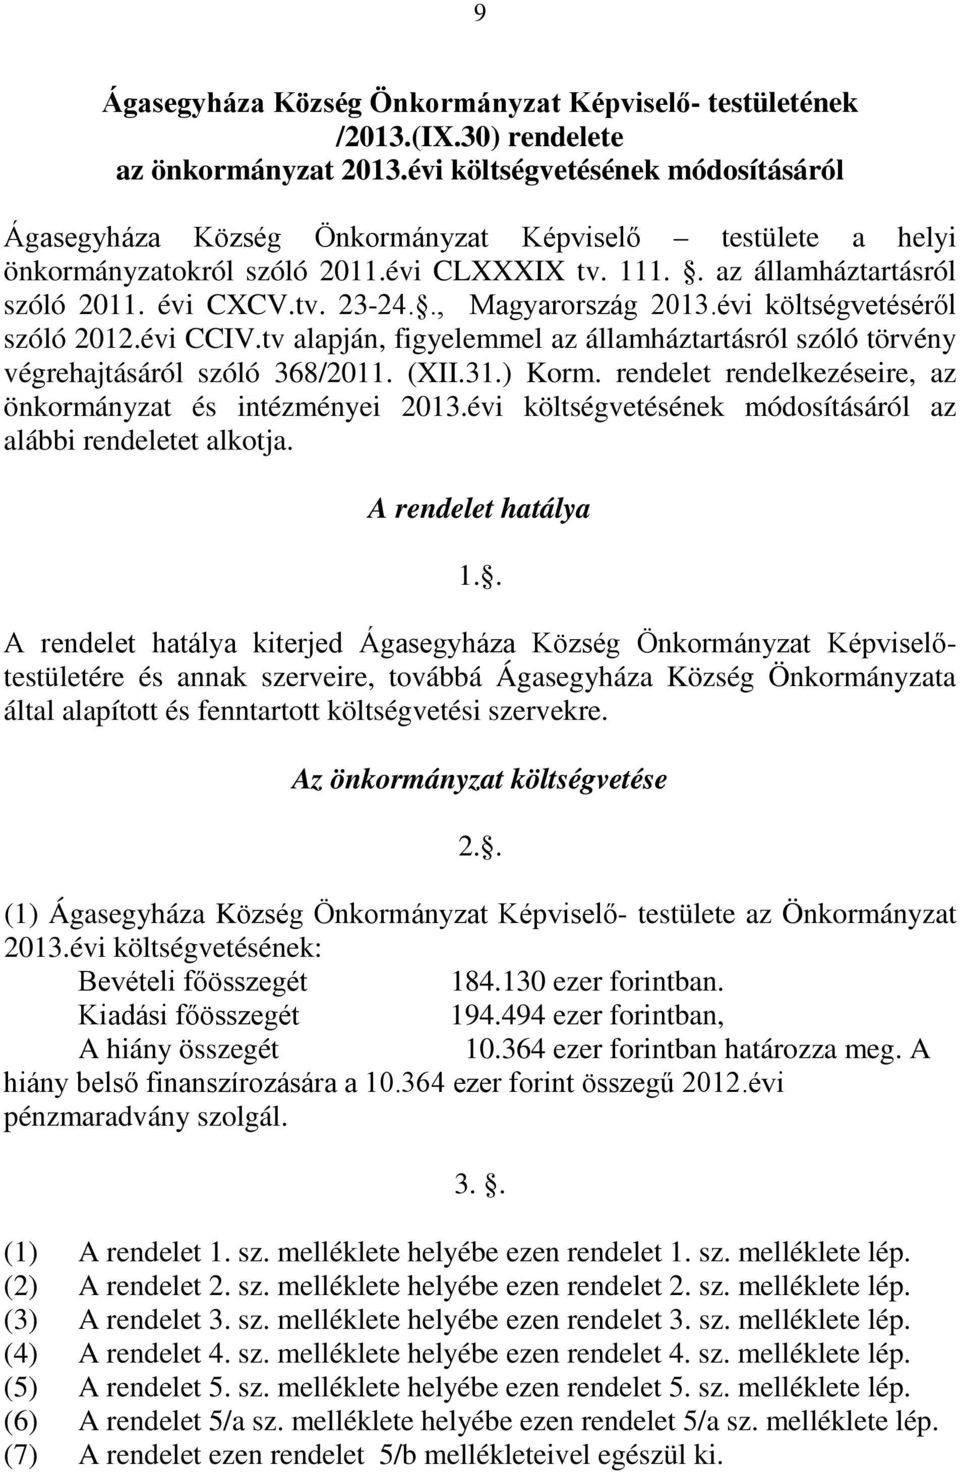 ., Magyarország 2013.évi költségvetéséről szóló 2012.évi CCIV.tv alapján, figyelemmel az államháztartásról szóló törvény végrehajtásáról szóló 368/2011. (XII.31.) Korm.